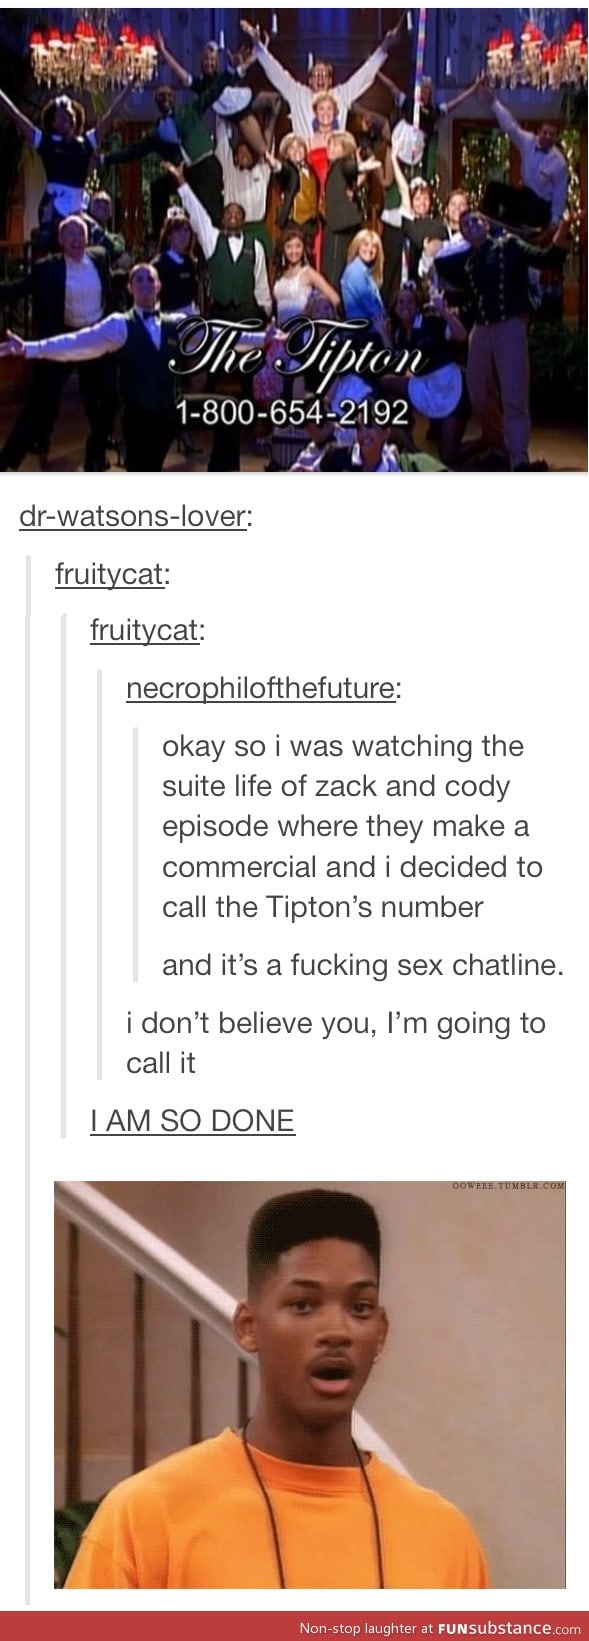 The tipton